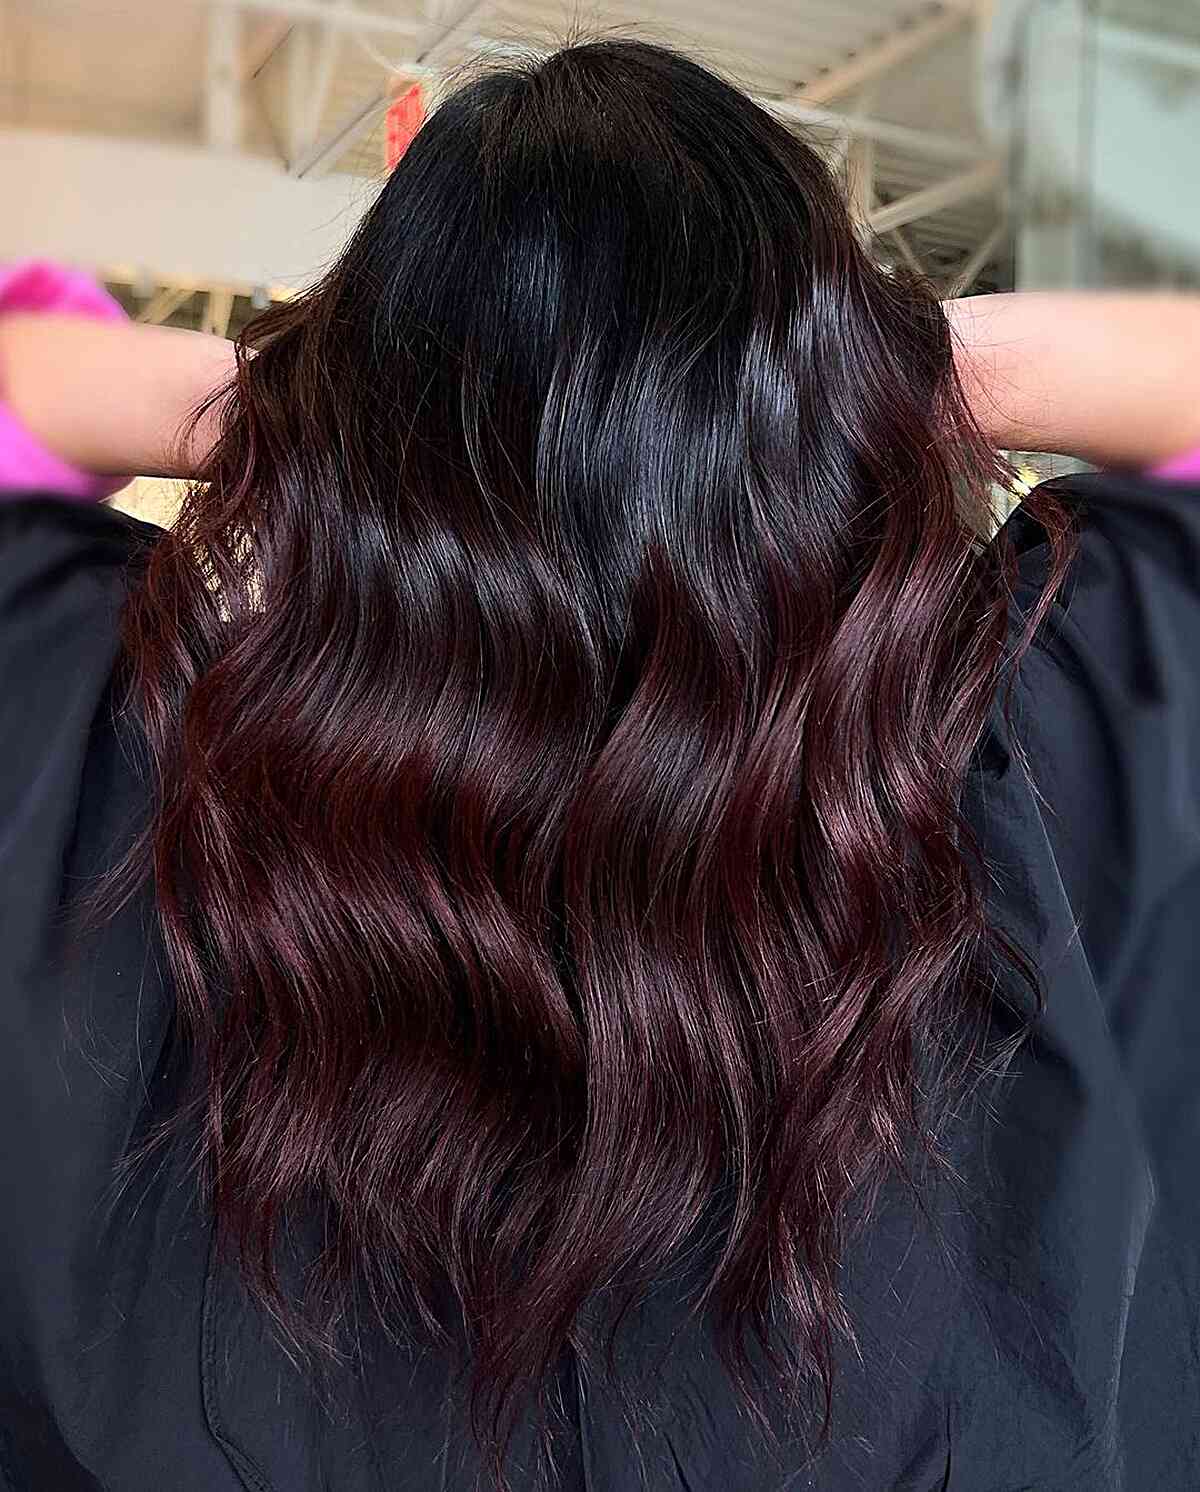 Burgundy Hair: 50 Vivid Hues & Shades You'll Just Love Wearing this Fall!